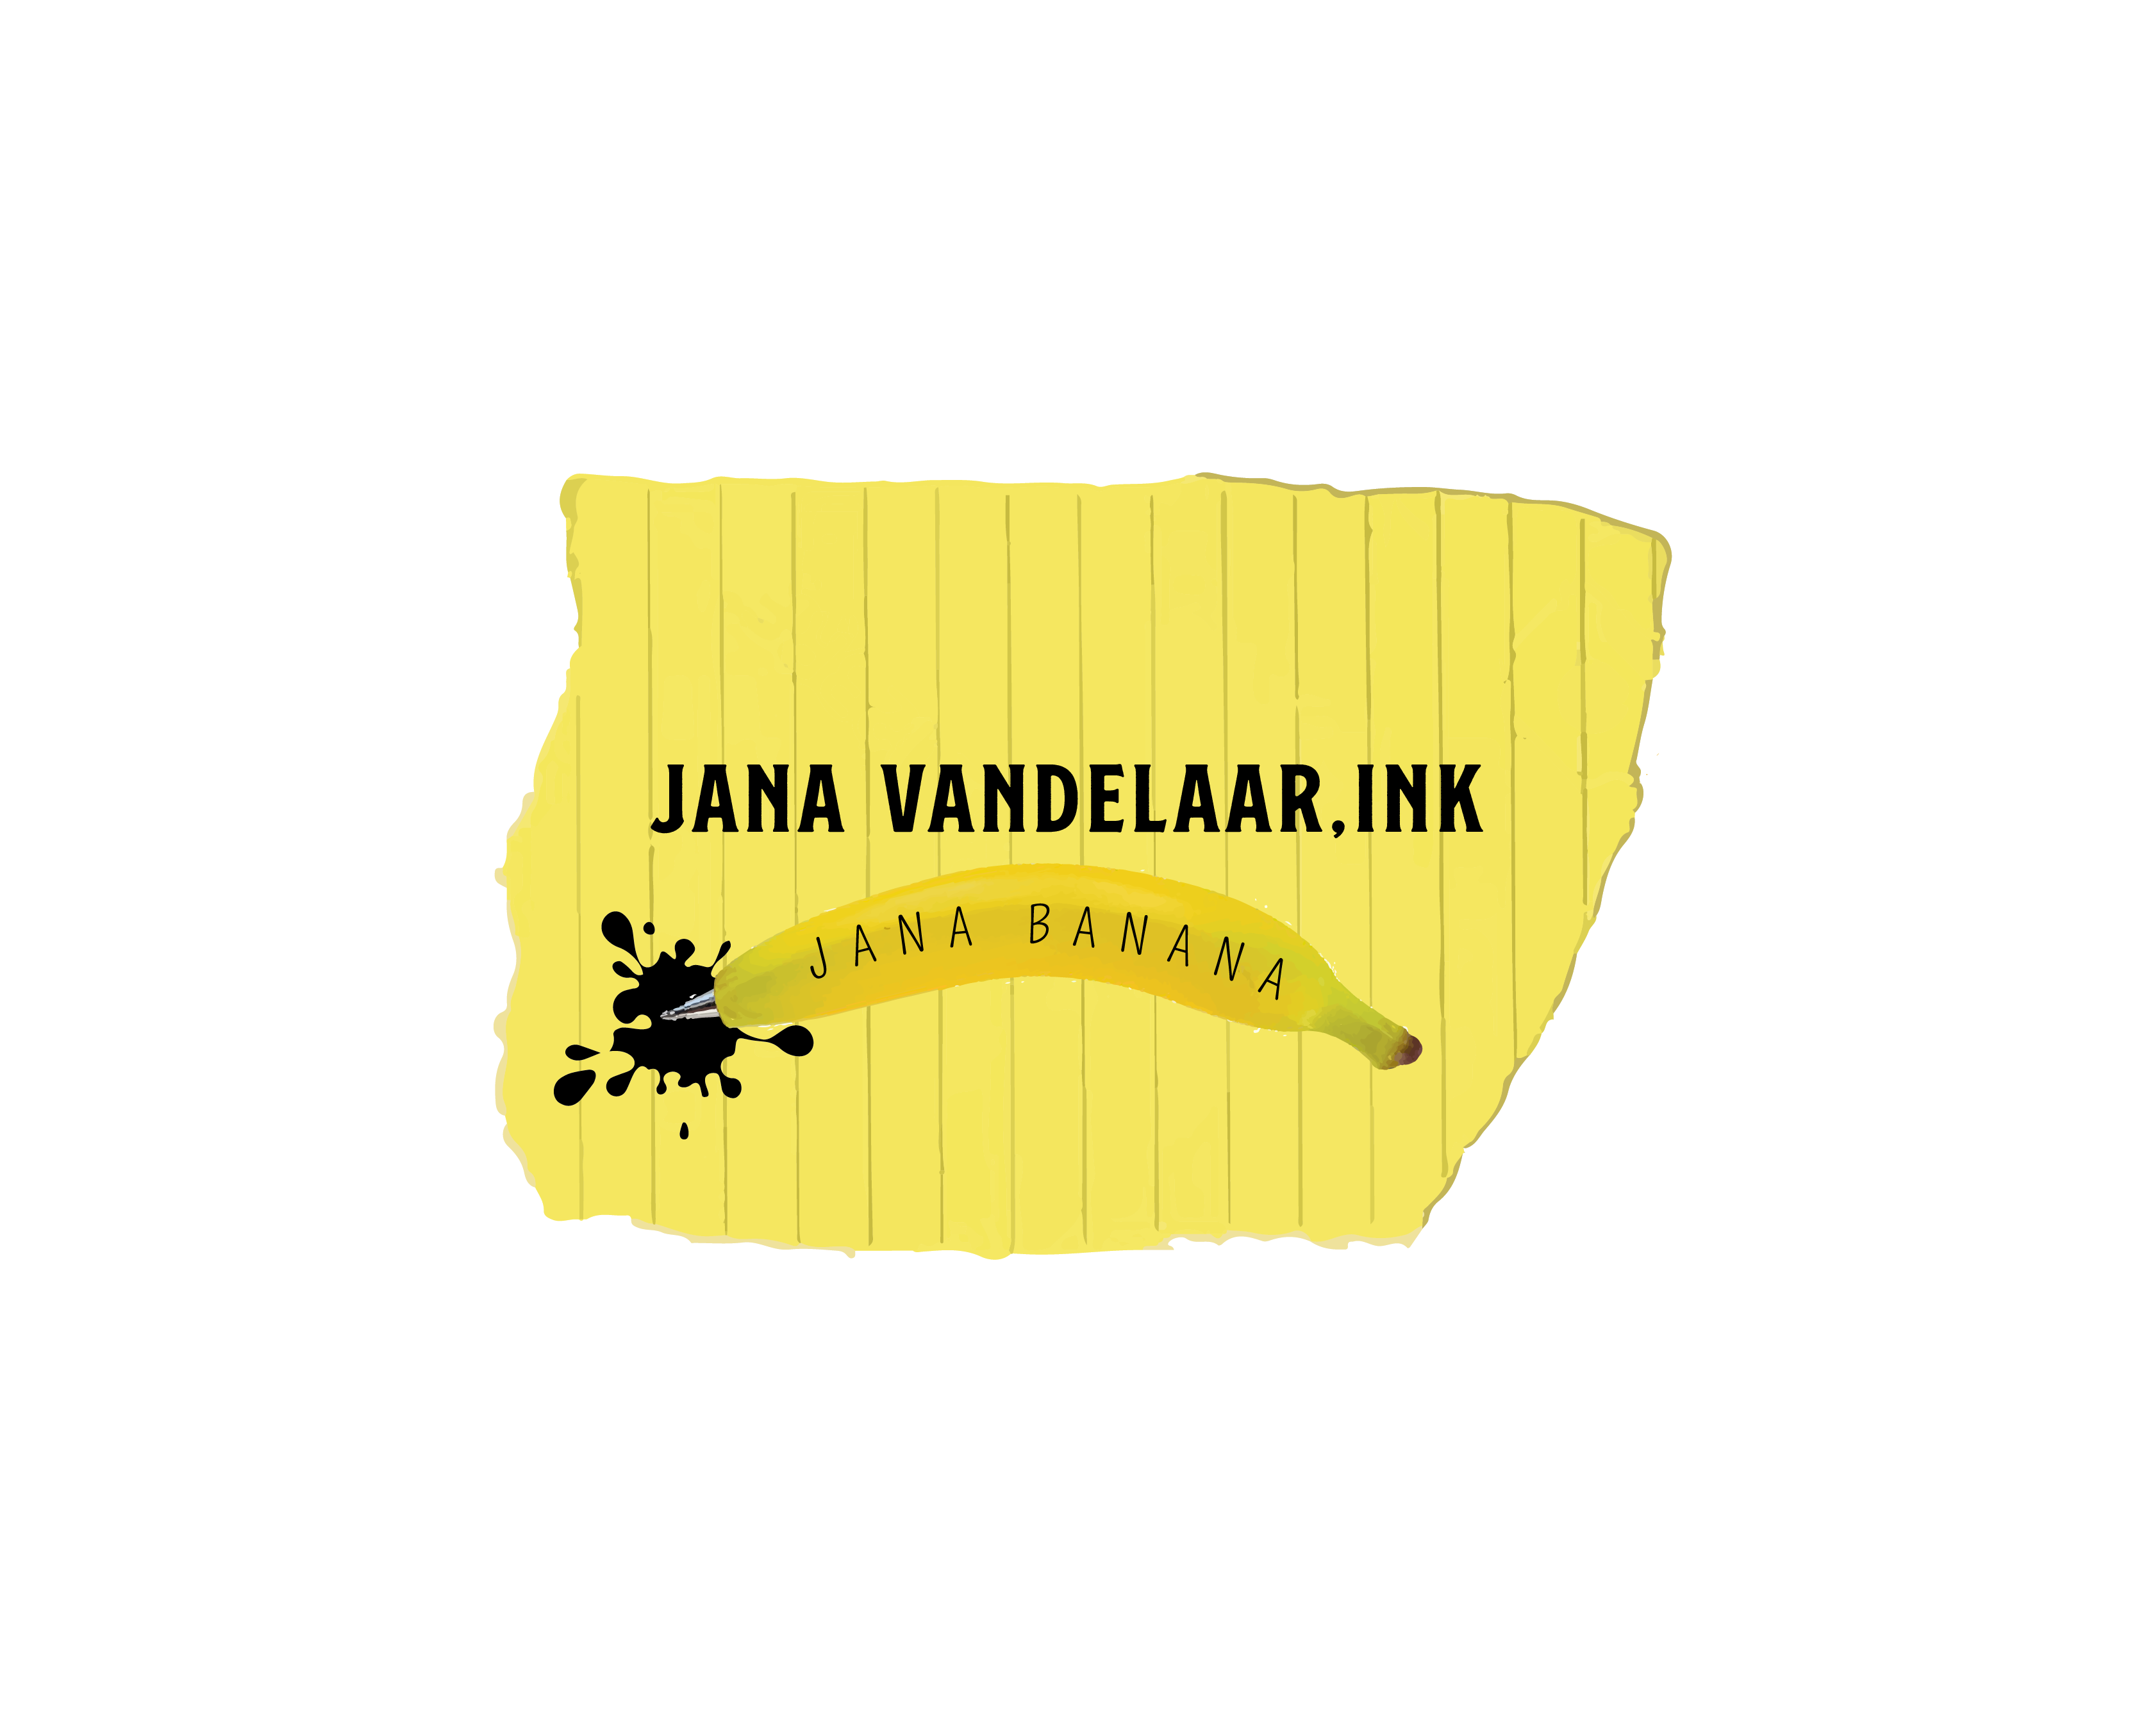 Logo Design entry 2191930 submitted by Haninas to the Logo Design for Jana Vandelaar, Ink run by janavandelaar